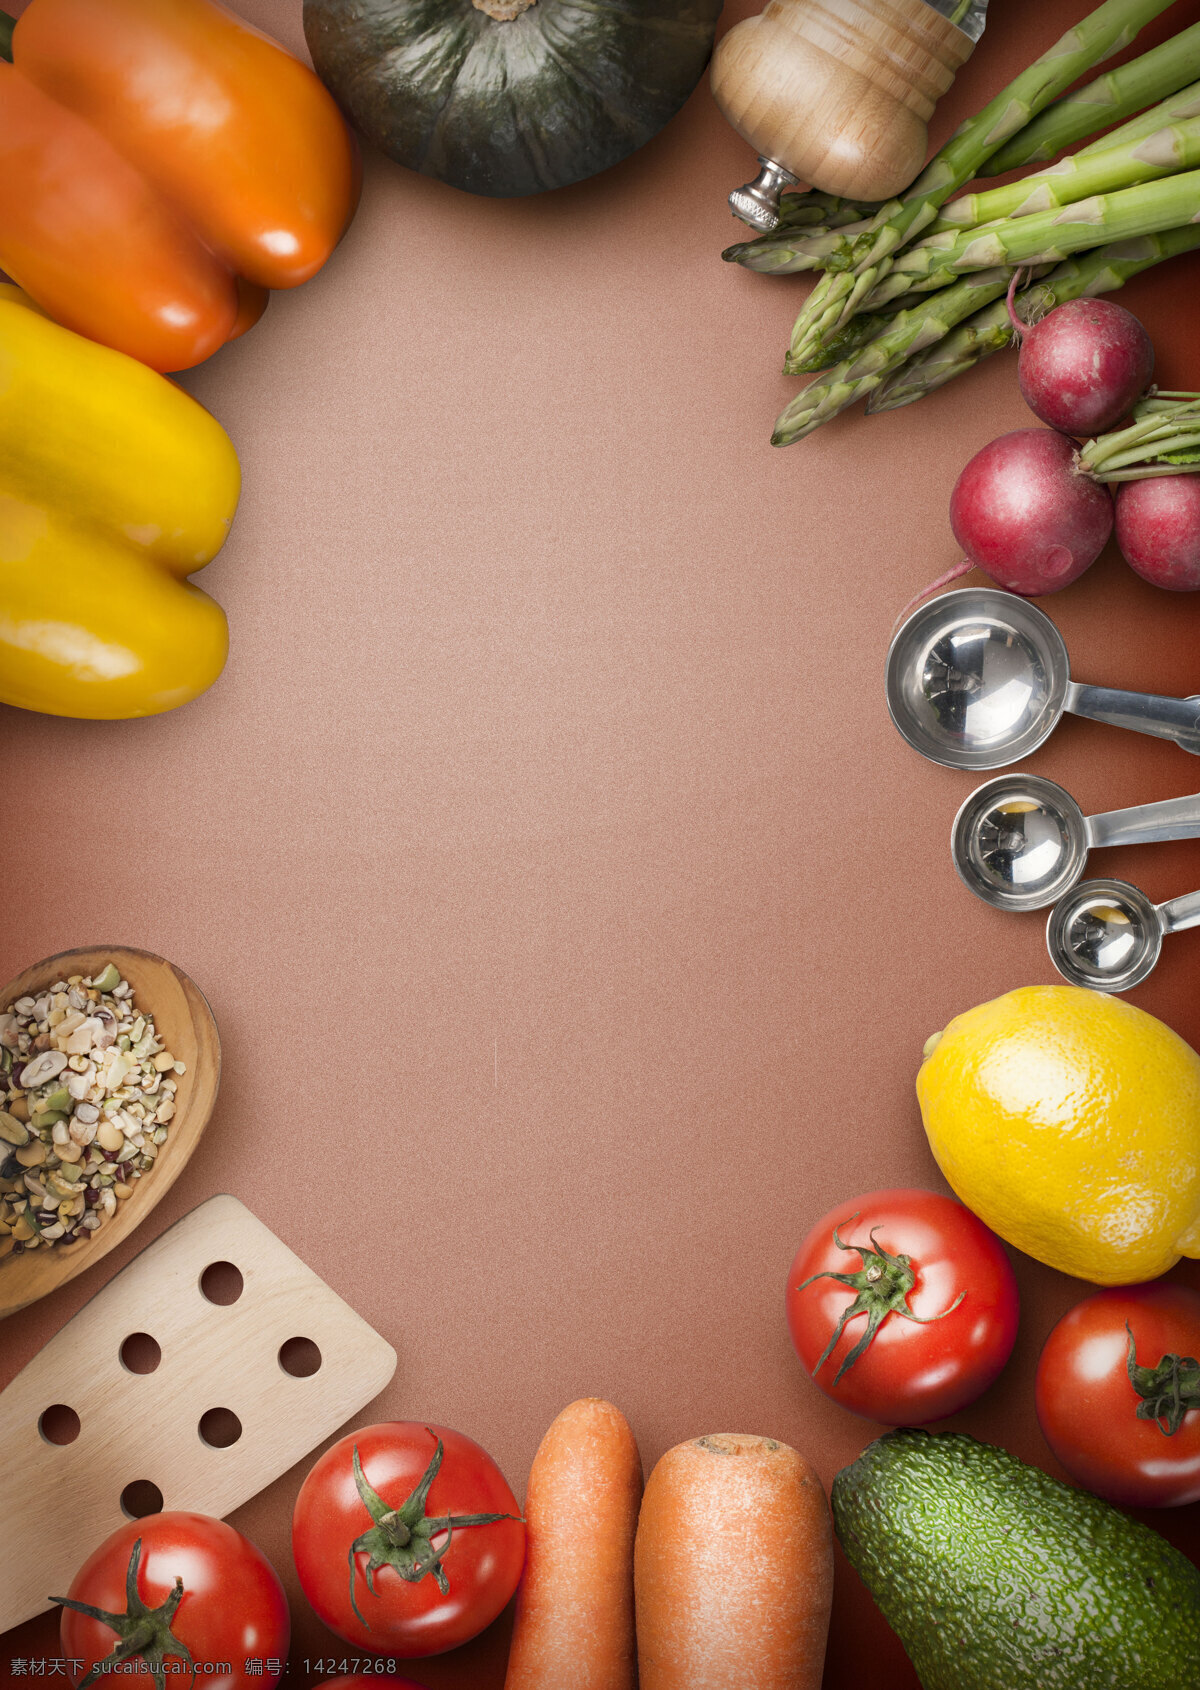 蔬菜背景 蔬菜摊 水果 食物 食品 新鲜 饮食 健康 绿色食品 生物世界 高清 tiff 桌面 高清壁纸 壁纸 拍摄 摆拍